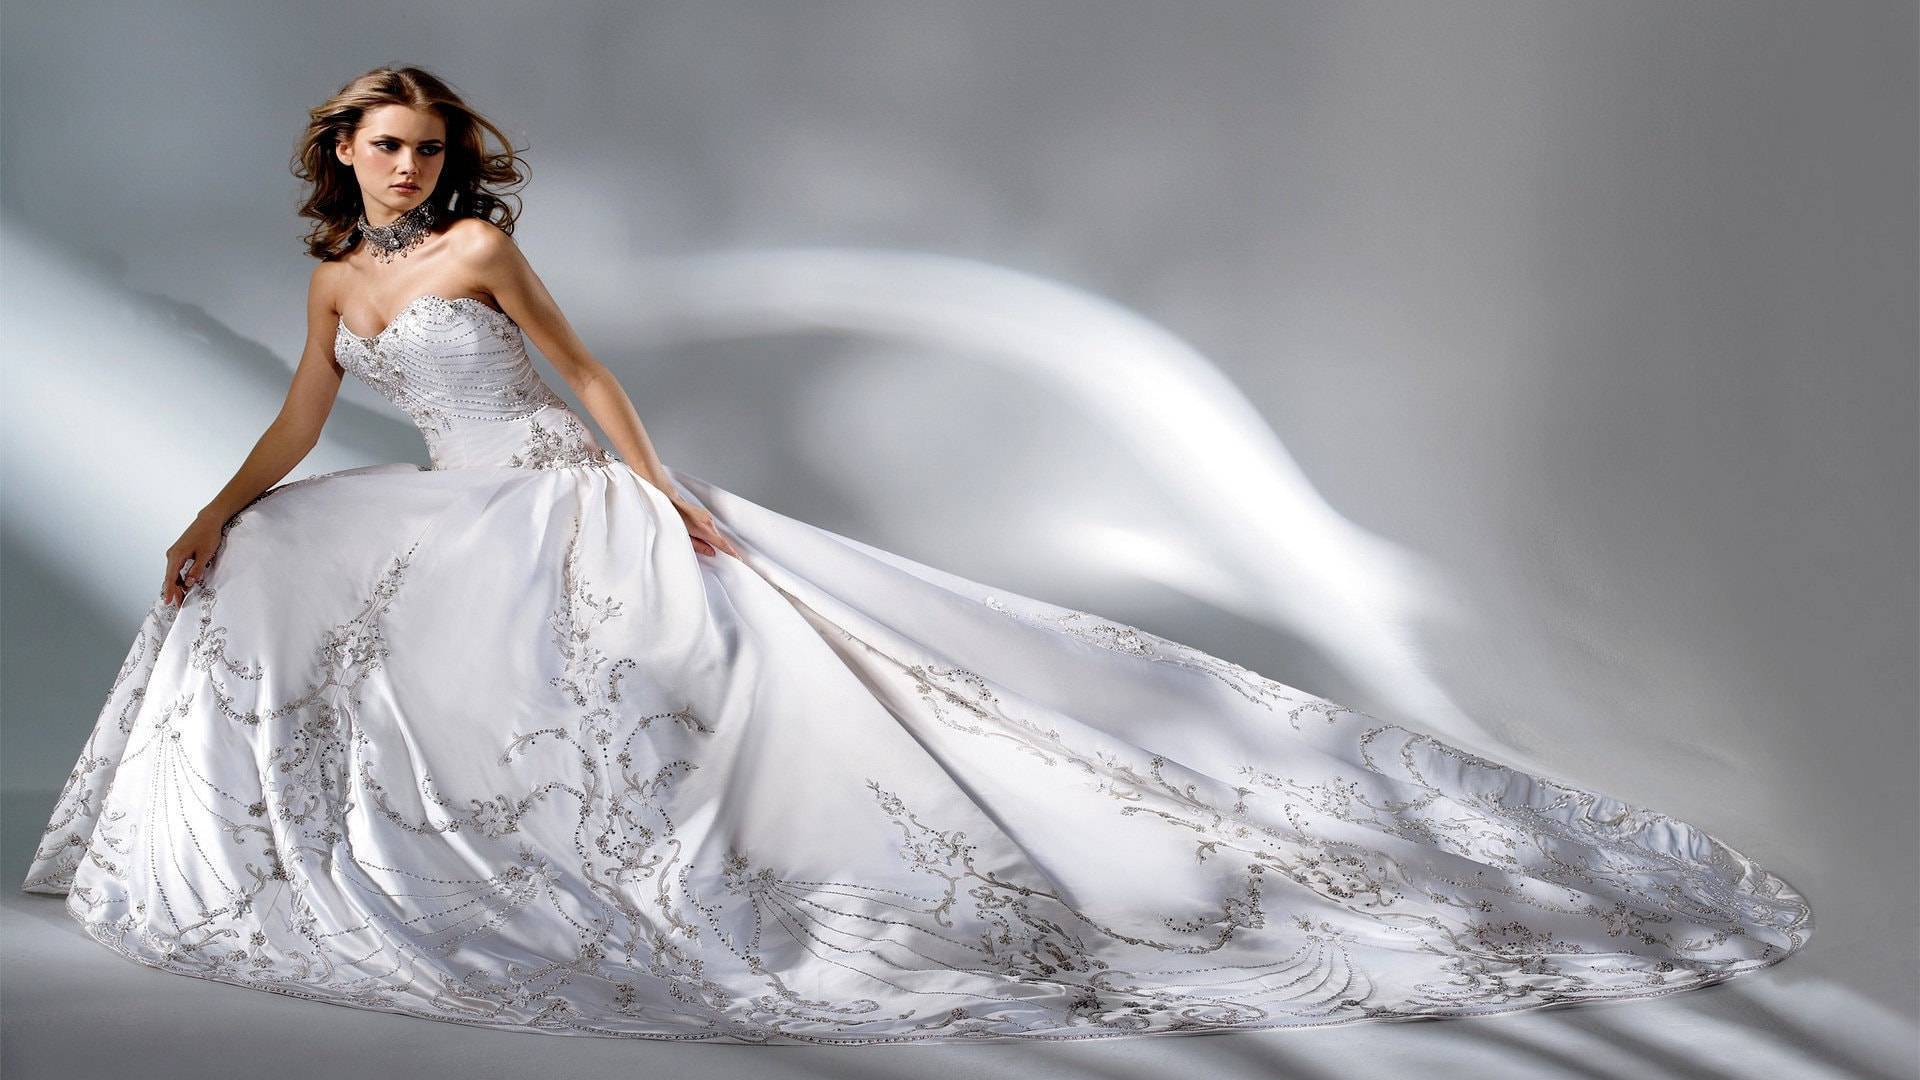 Что означает цвет свадебного платья?